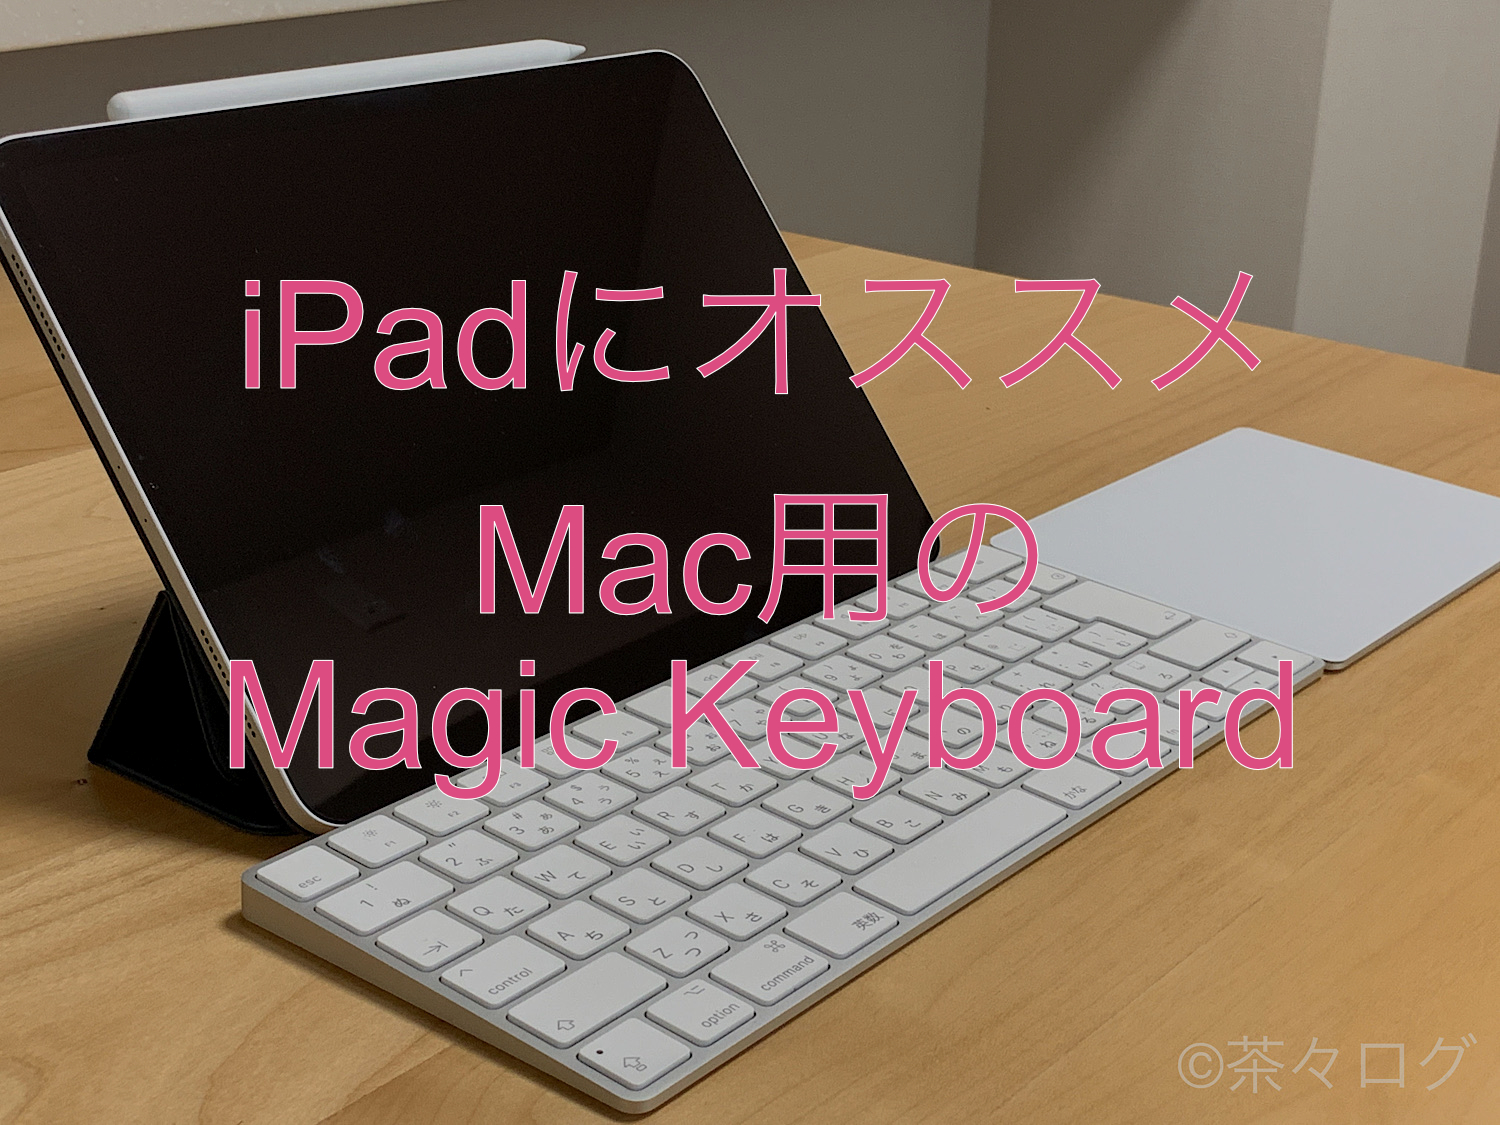 iPad Magic Keyboard マジックキーボード - タブレット